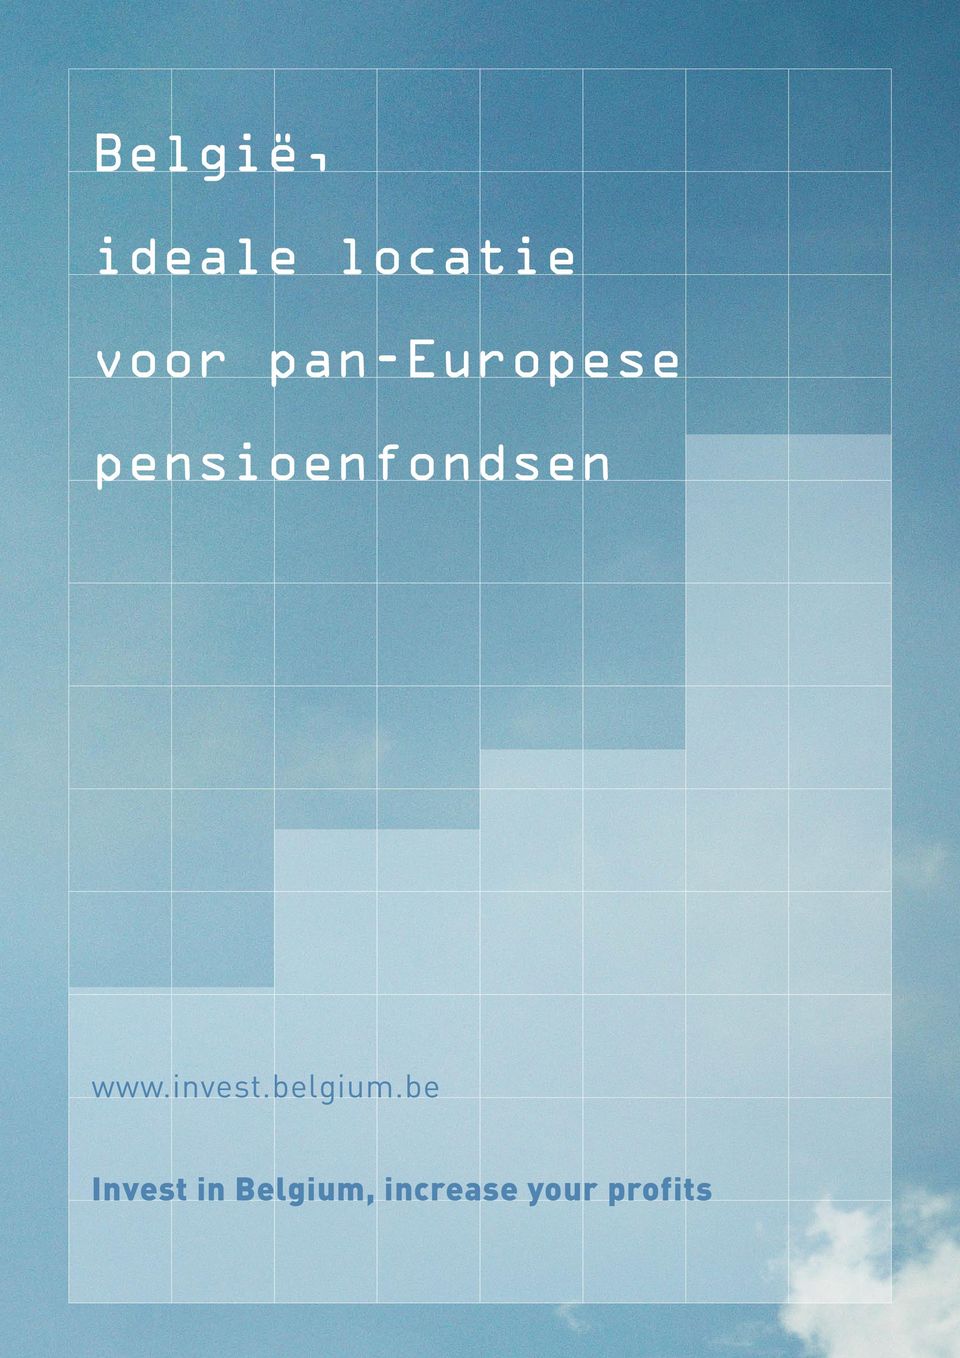 www.invest.belgium.